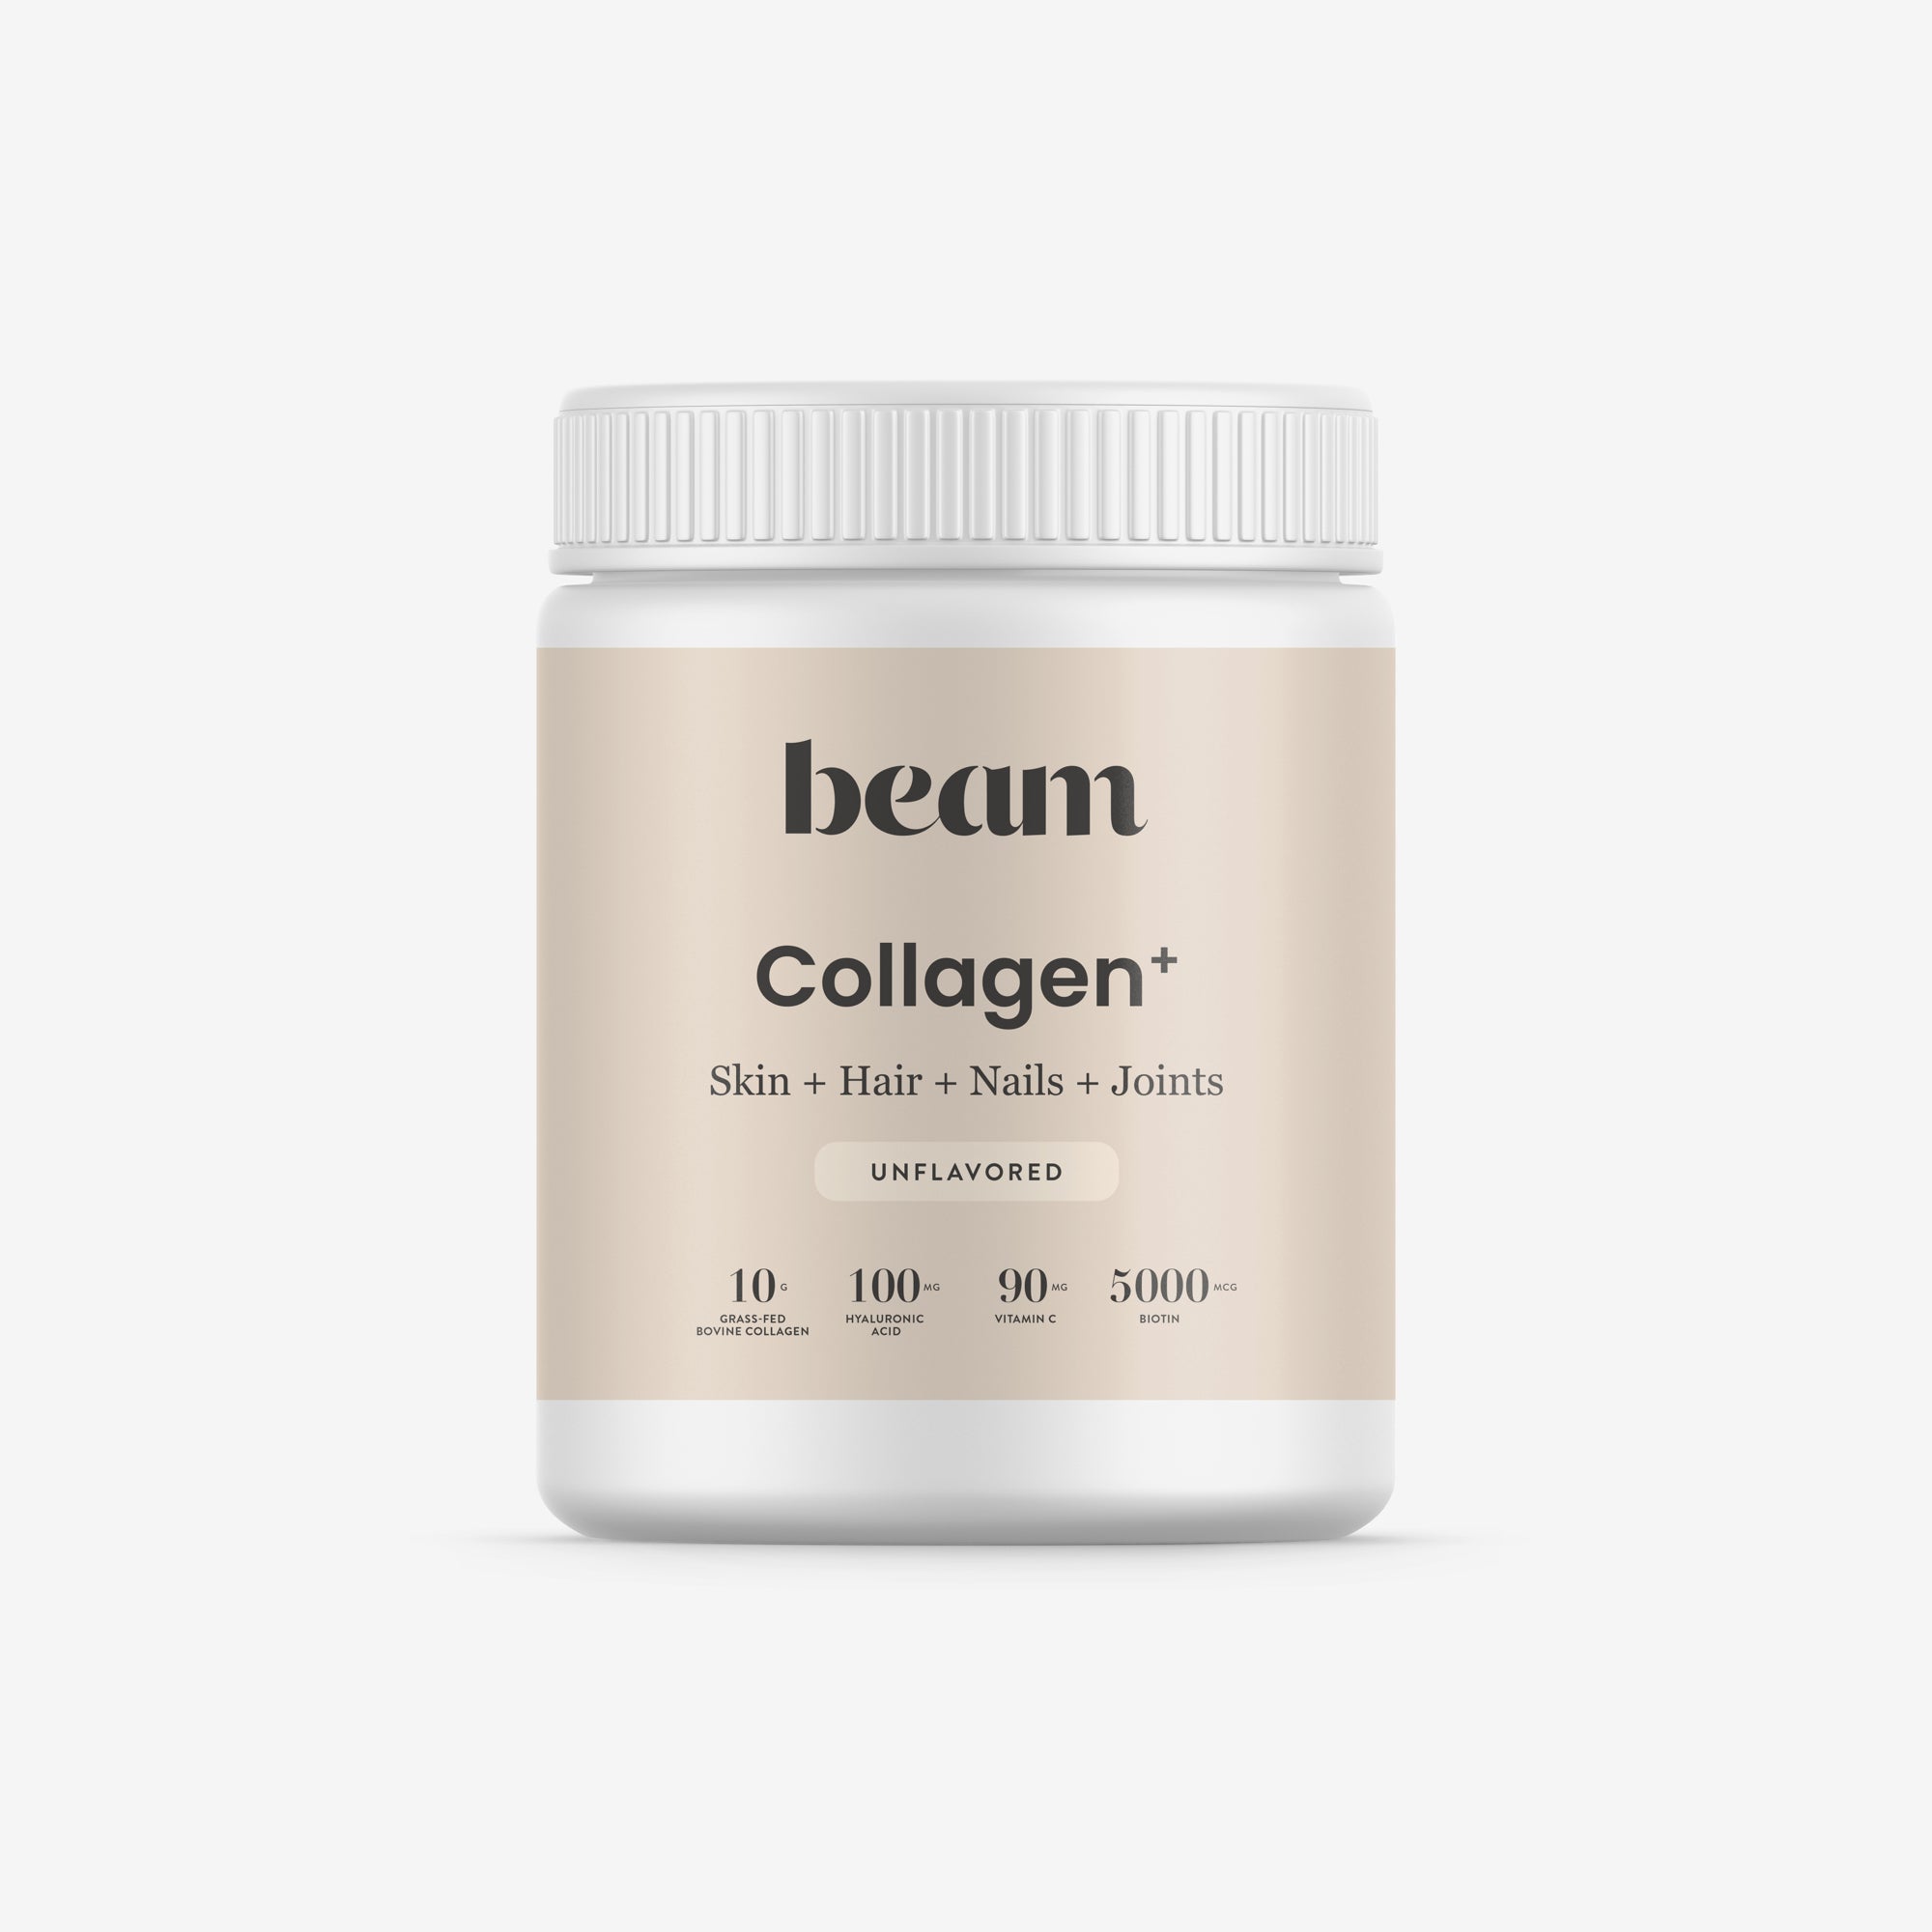 Beam Collagen